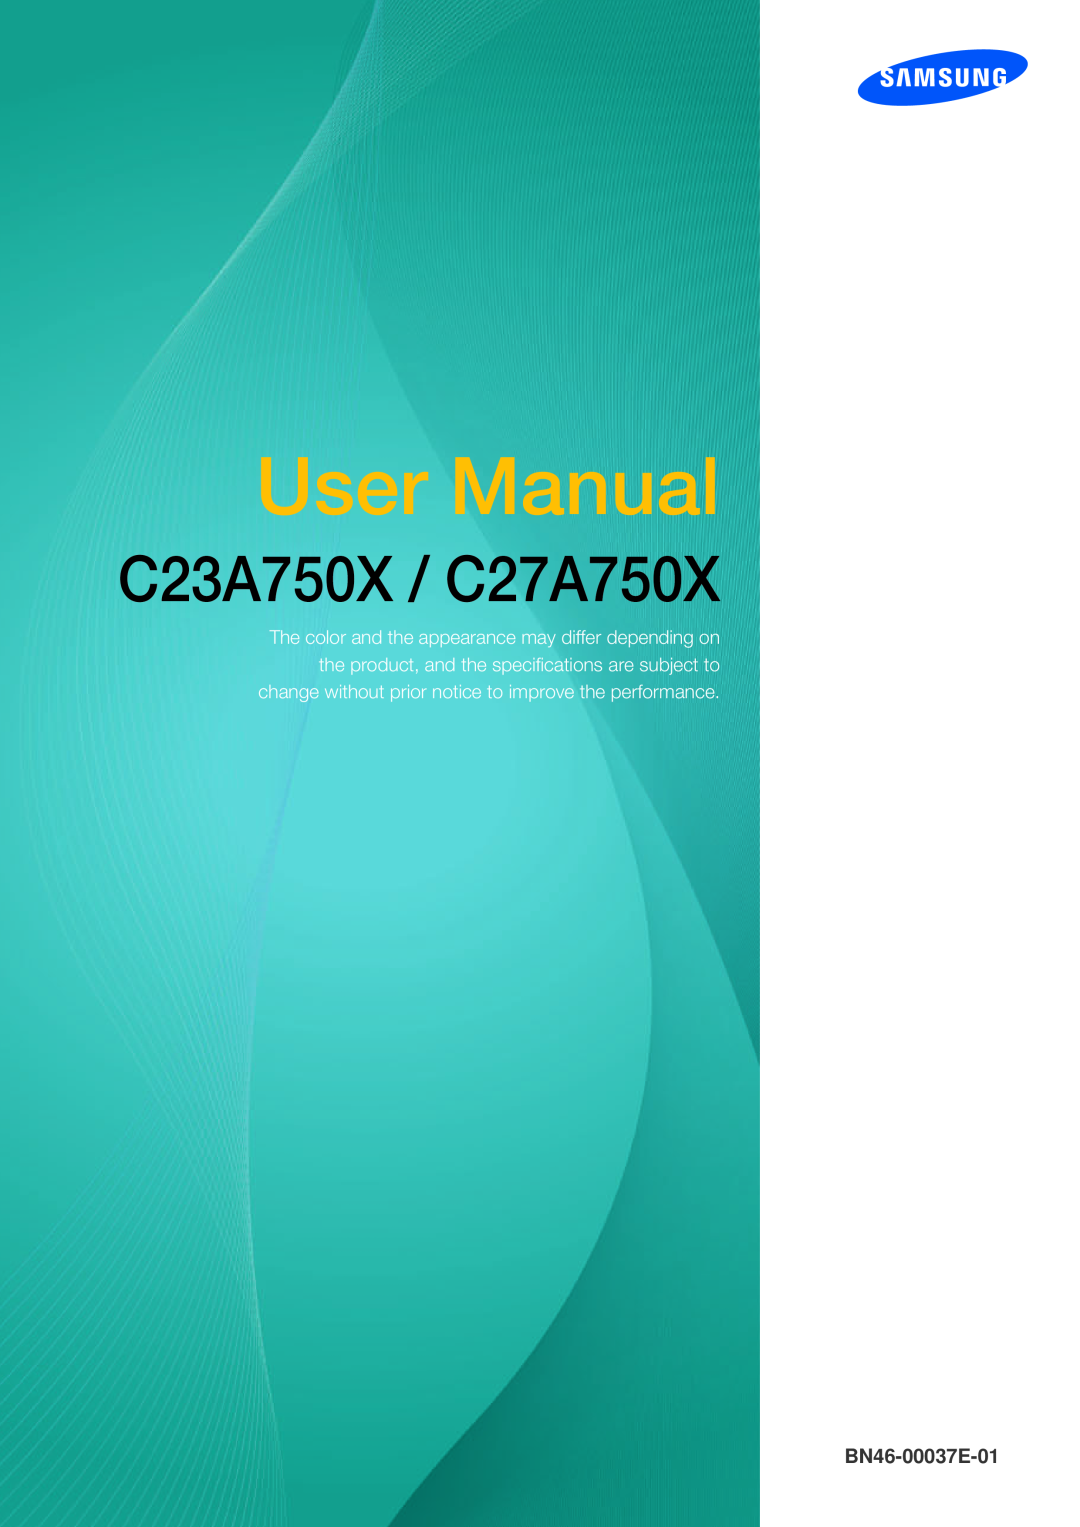 Samsung LC23A750XS/EN, LC27A750XS/ZA, LC27A750XS/EN, LC27A750XS/CI manual User Manual, C23A750X / C27A750X, BN46-00037E-01 